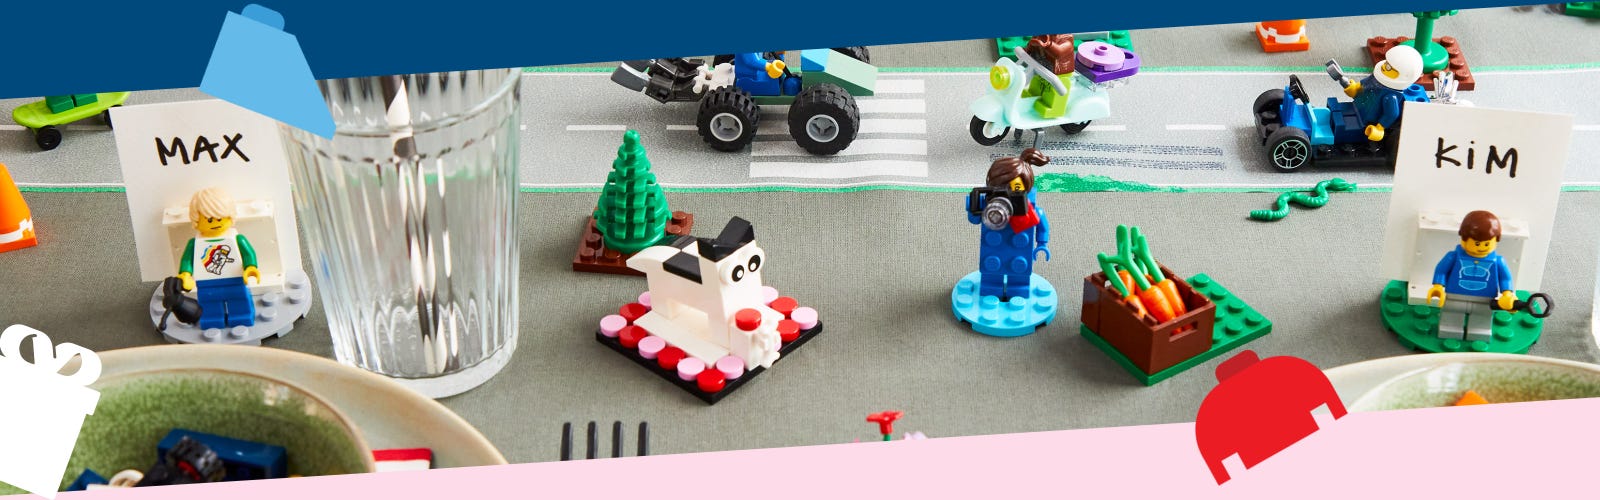 Ideas Cumpleaños Lego - Como Celebrar tu Fiesta, Decorar y Hacer los Adornos